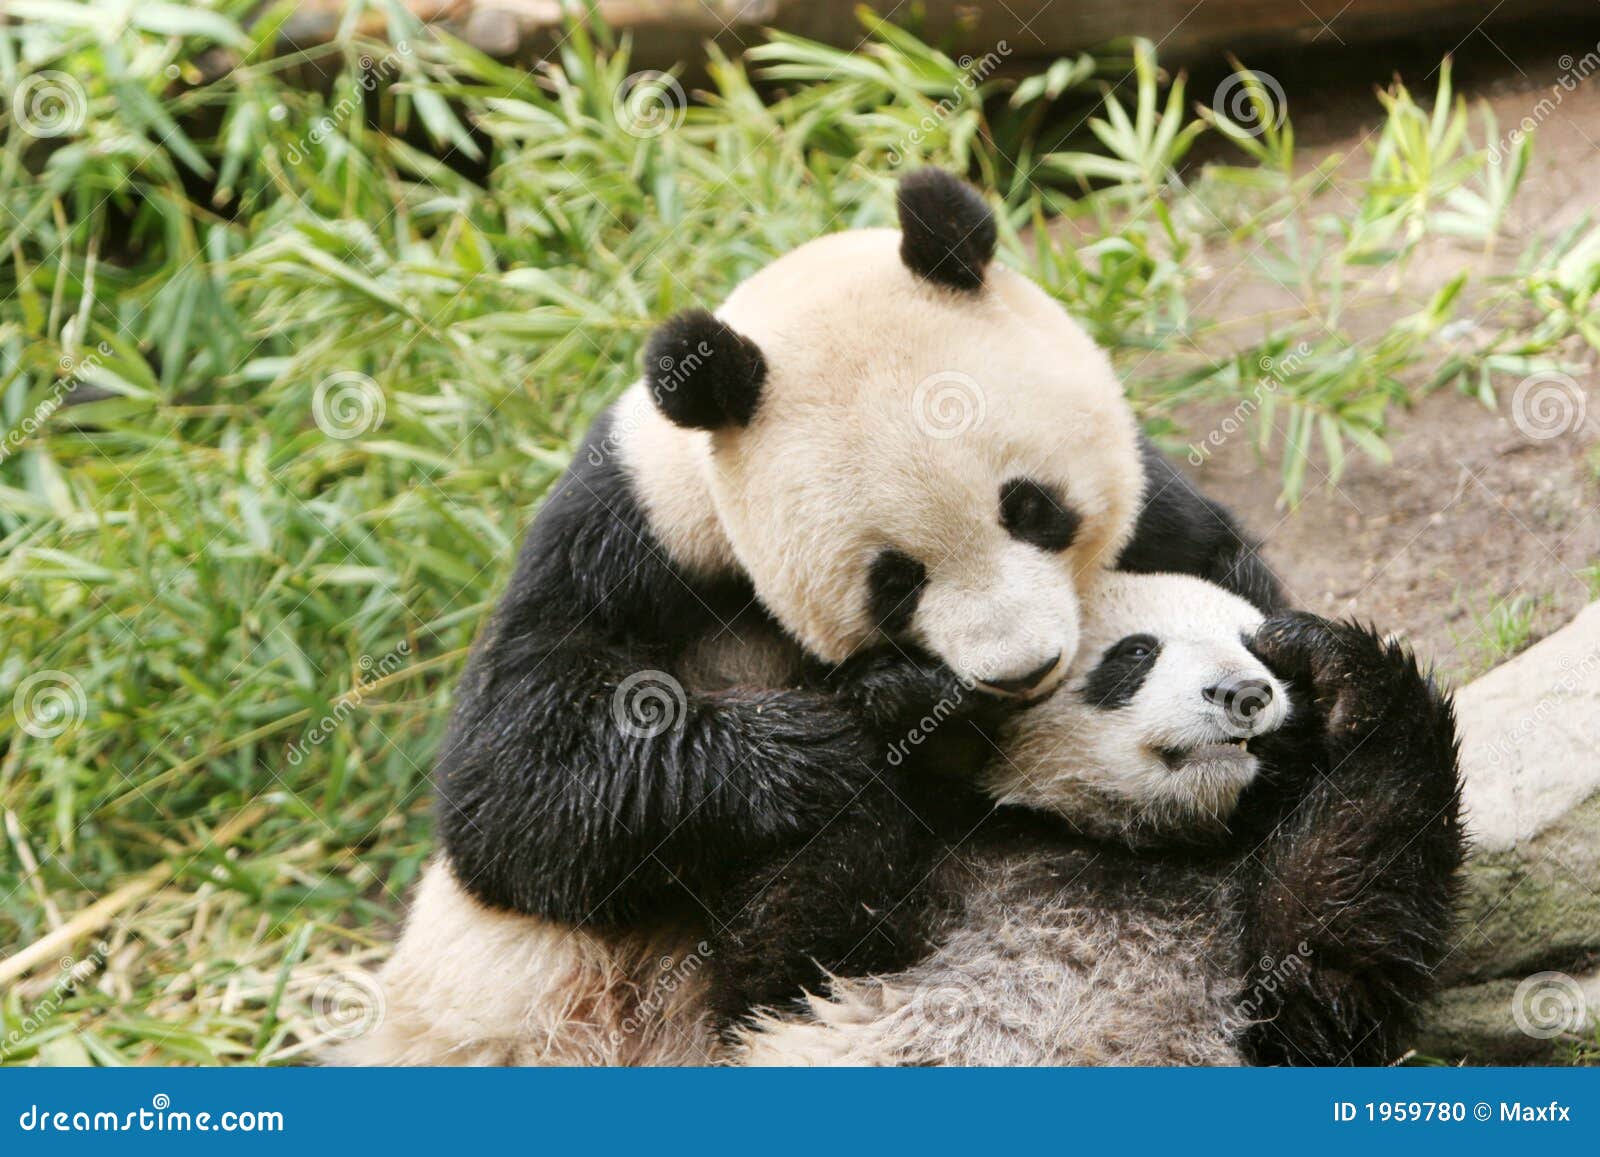 panda bear and cub